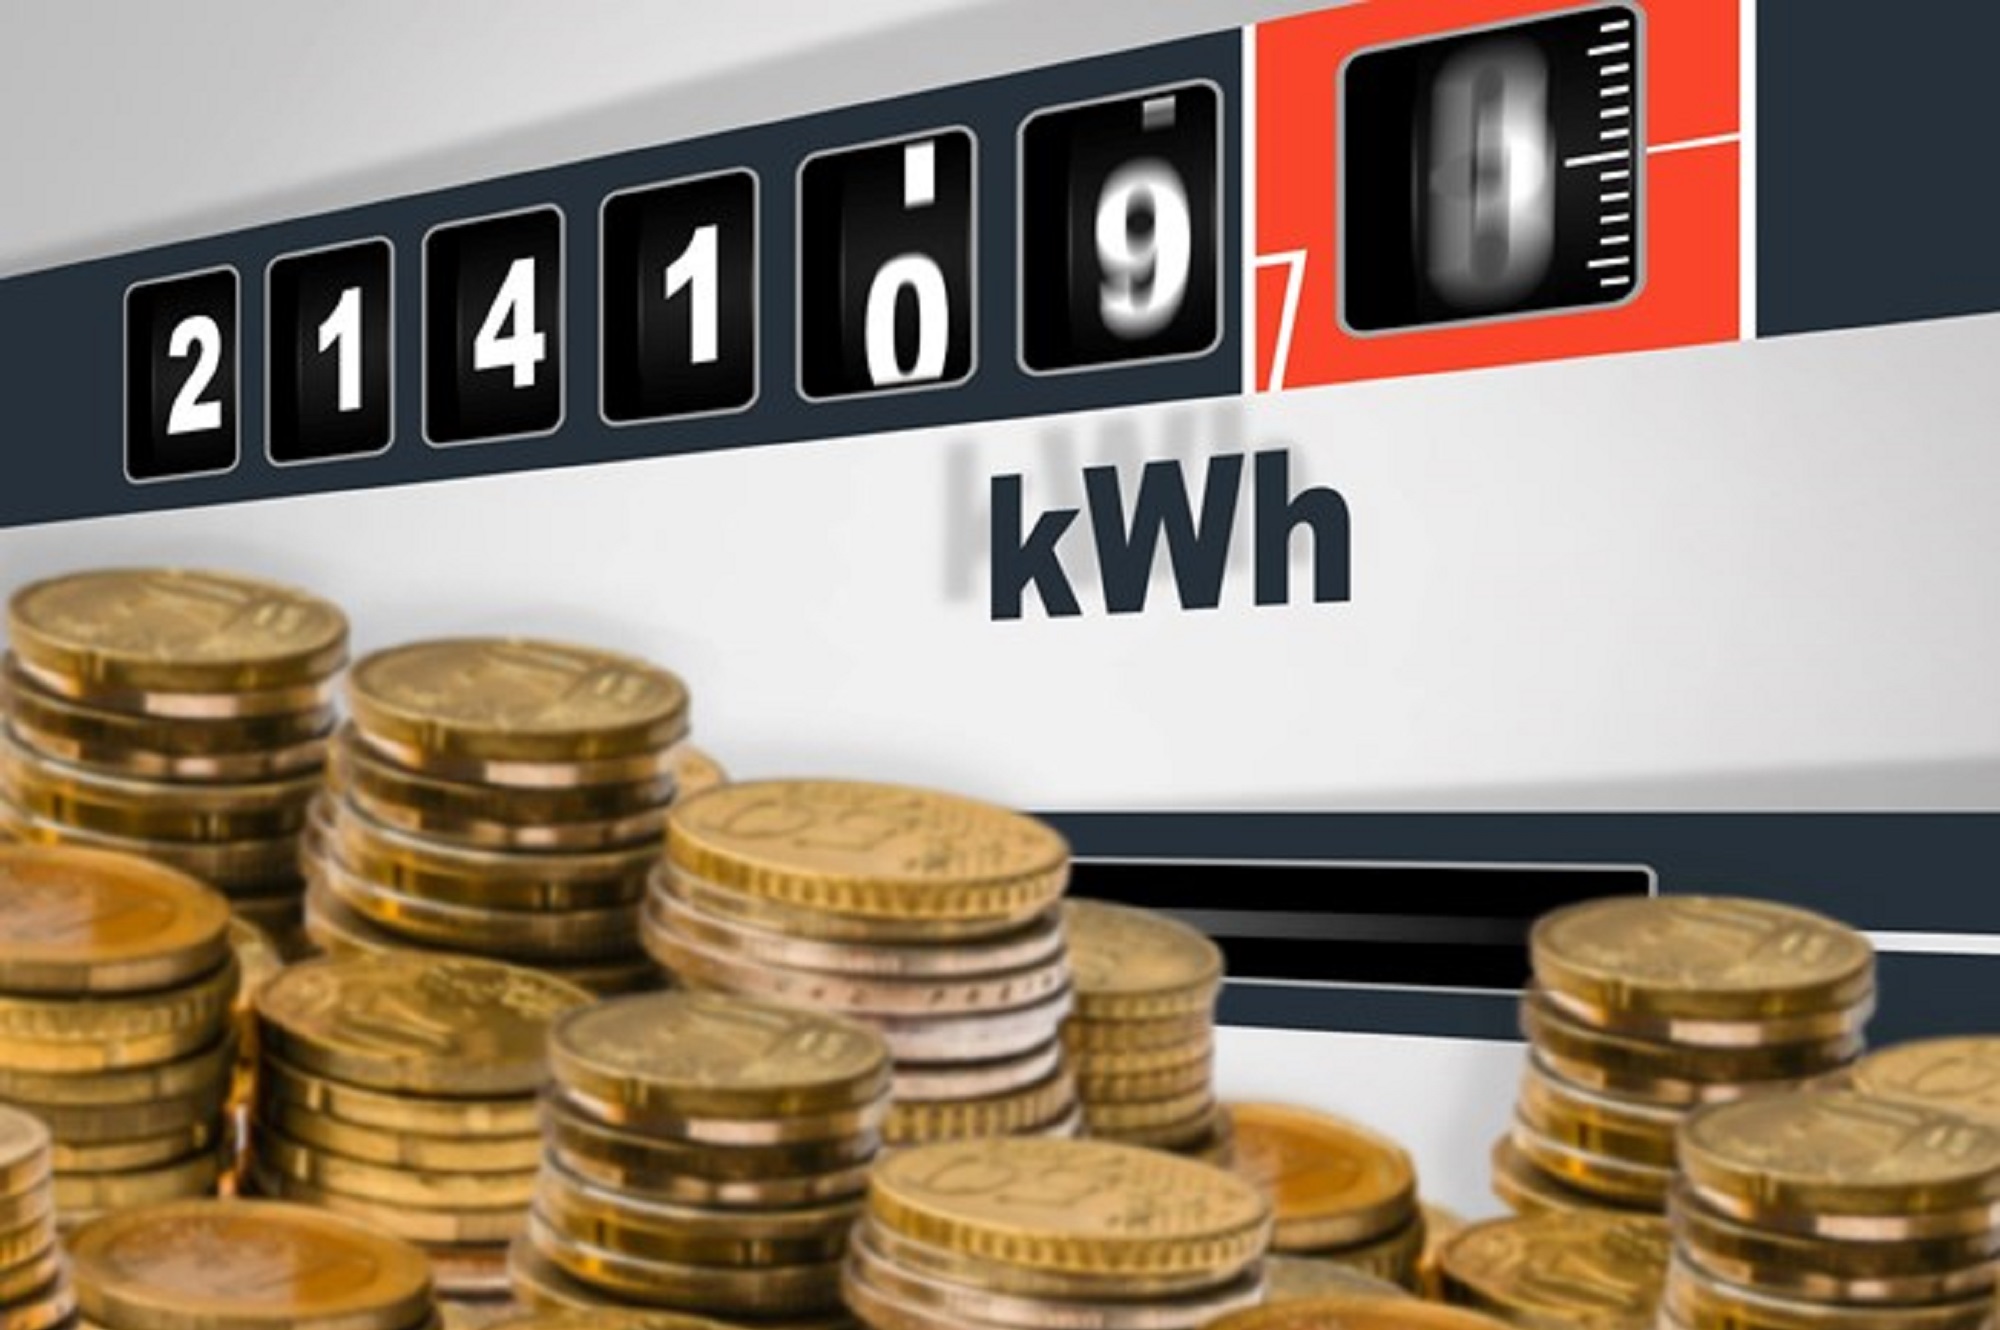 Λογαριασμοί ρεύματος τον Μάιο: Που θα διαμορφωθούν οι τιμές των παρόχων -Πού θα βρείτε το φθηνότερο ρεύμα